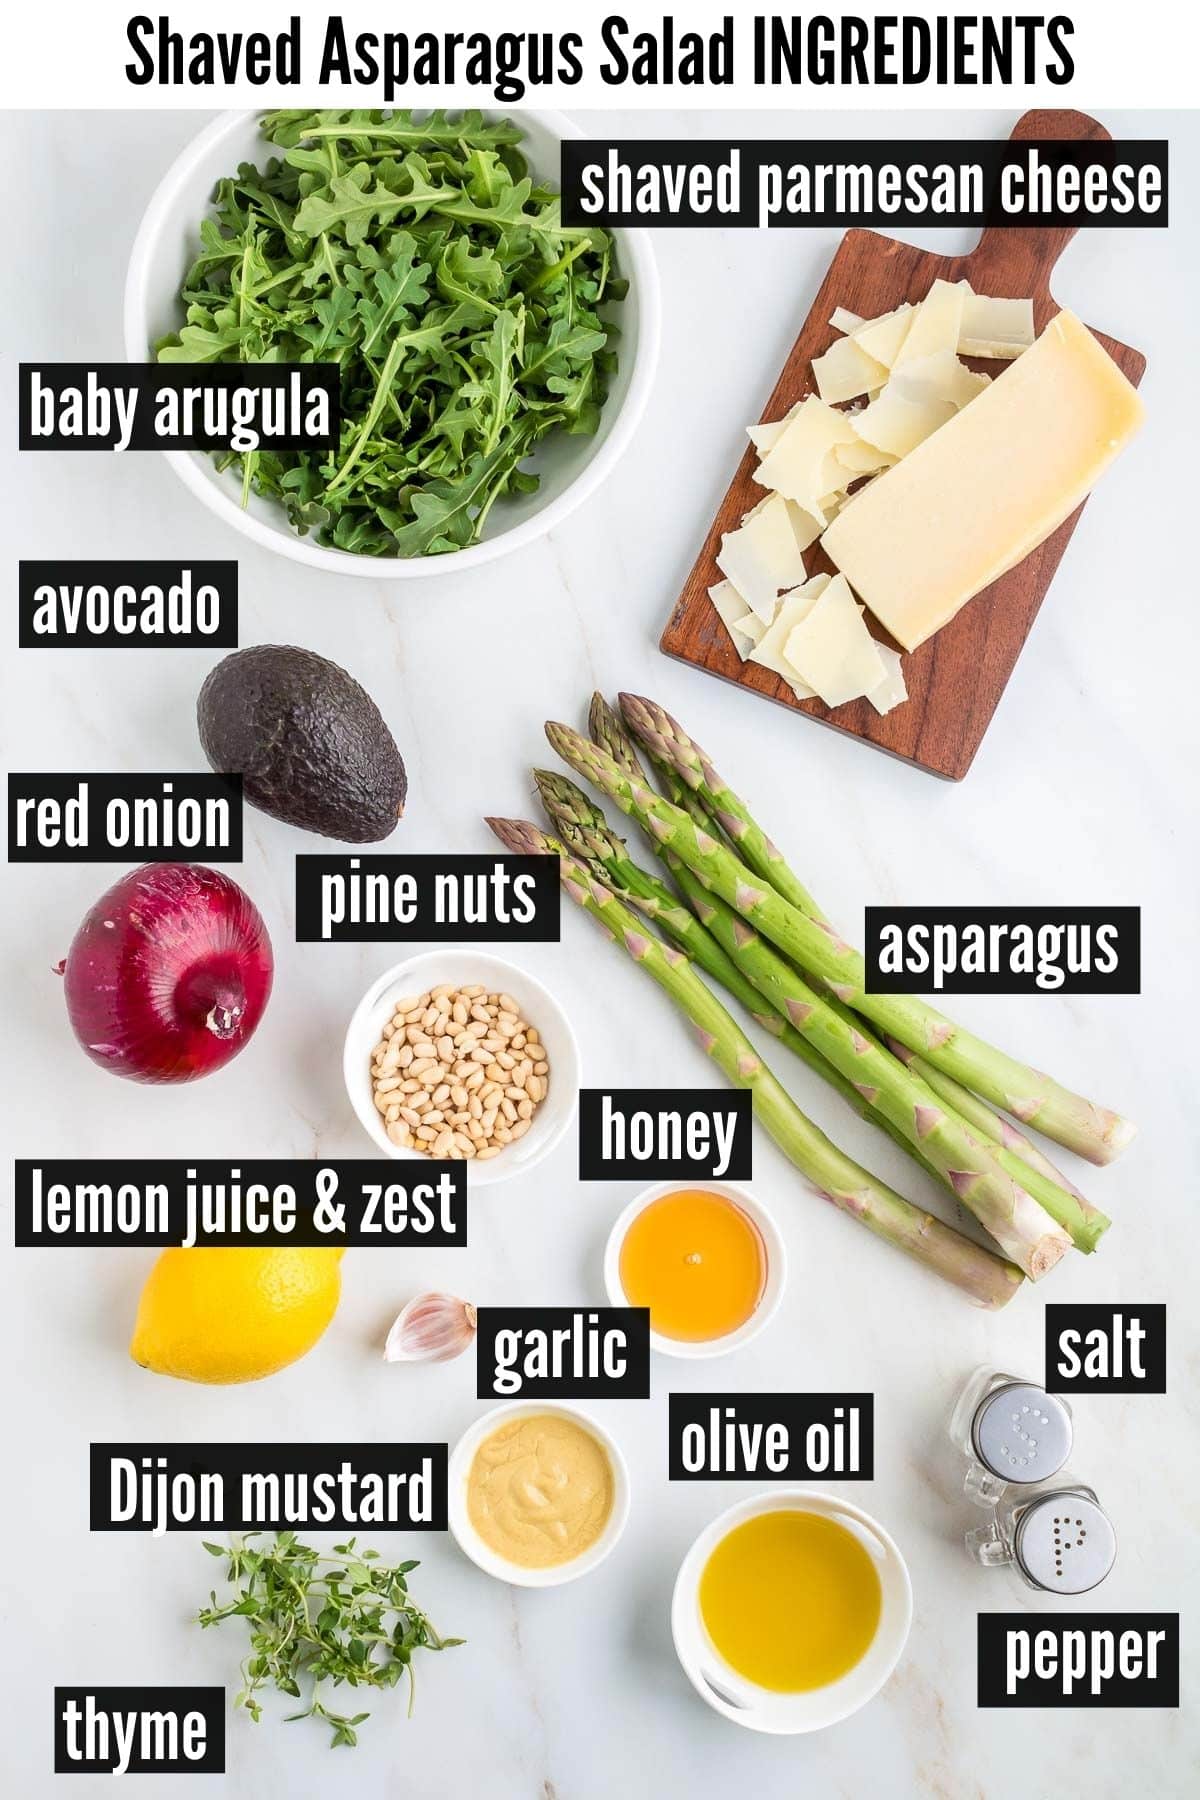 shaved asparagus salad labelled ingredients.